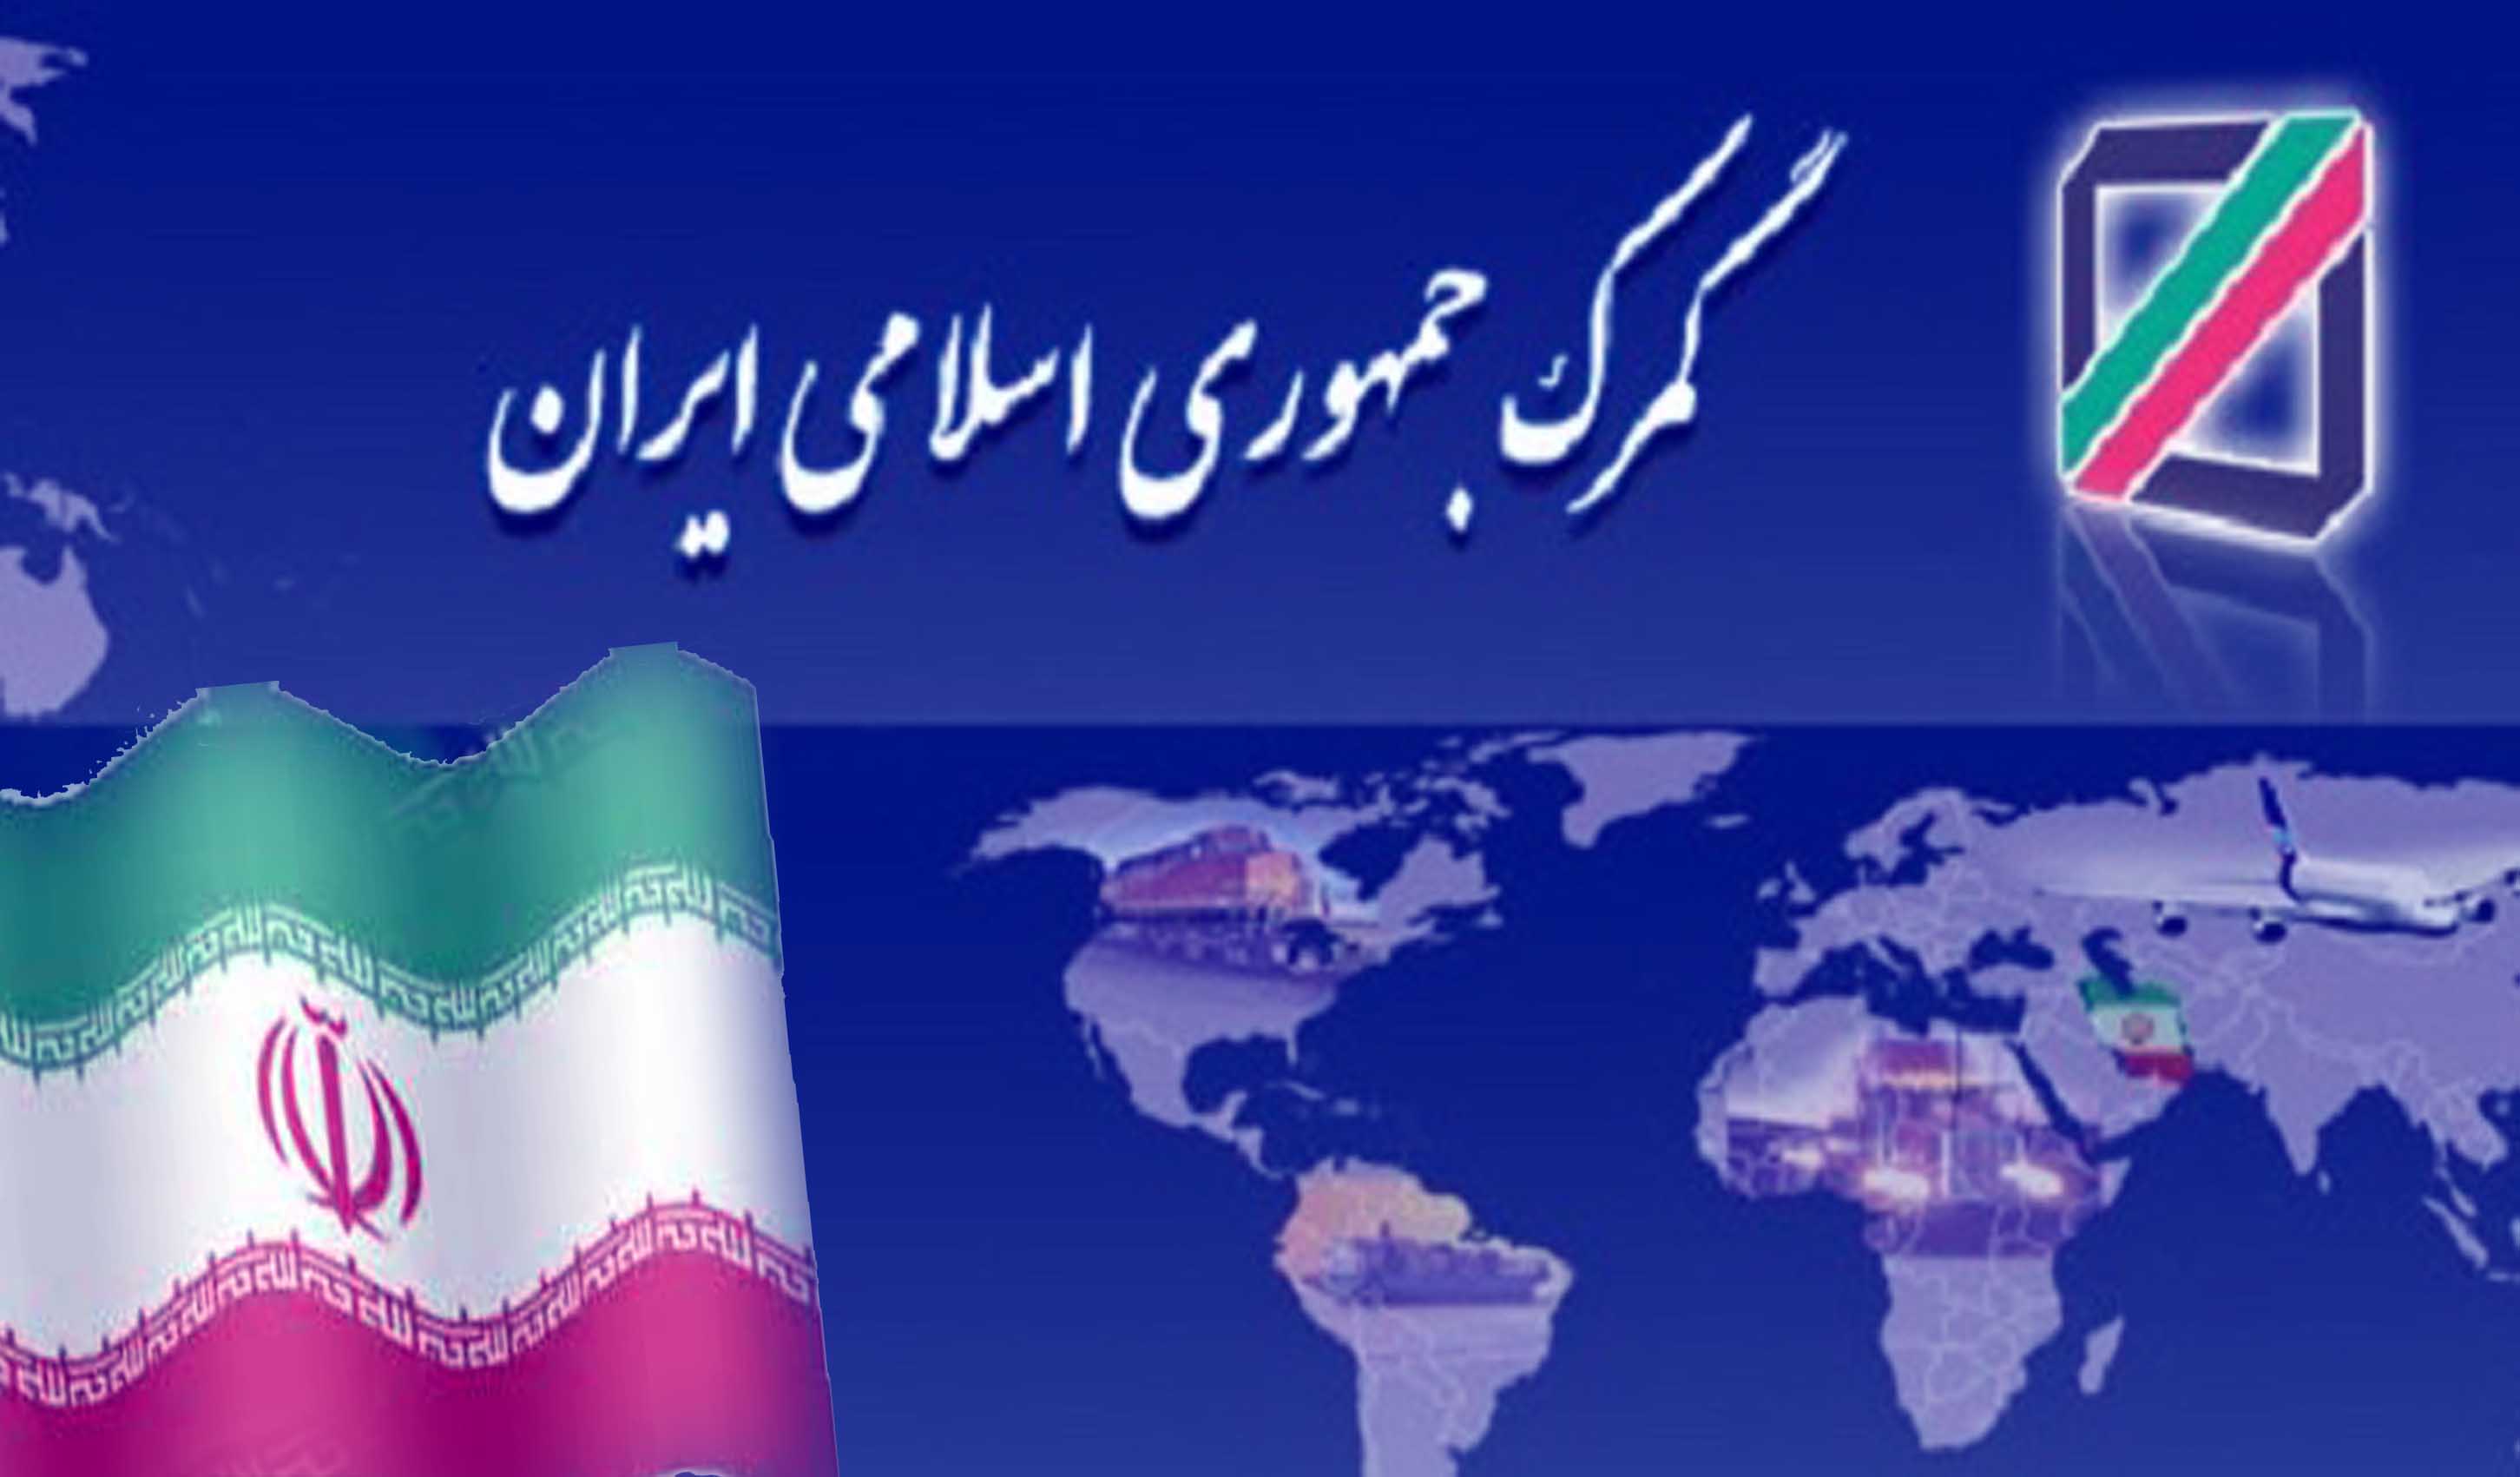 اقدامات و عملکرد 9 گانه گمرک ایران در مسیر اقتصاد مقاومتی